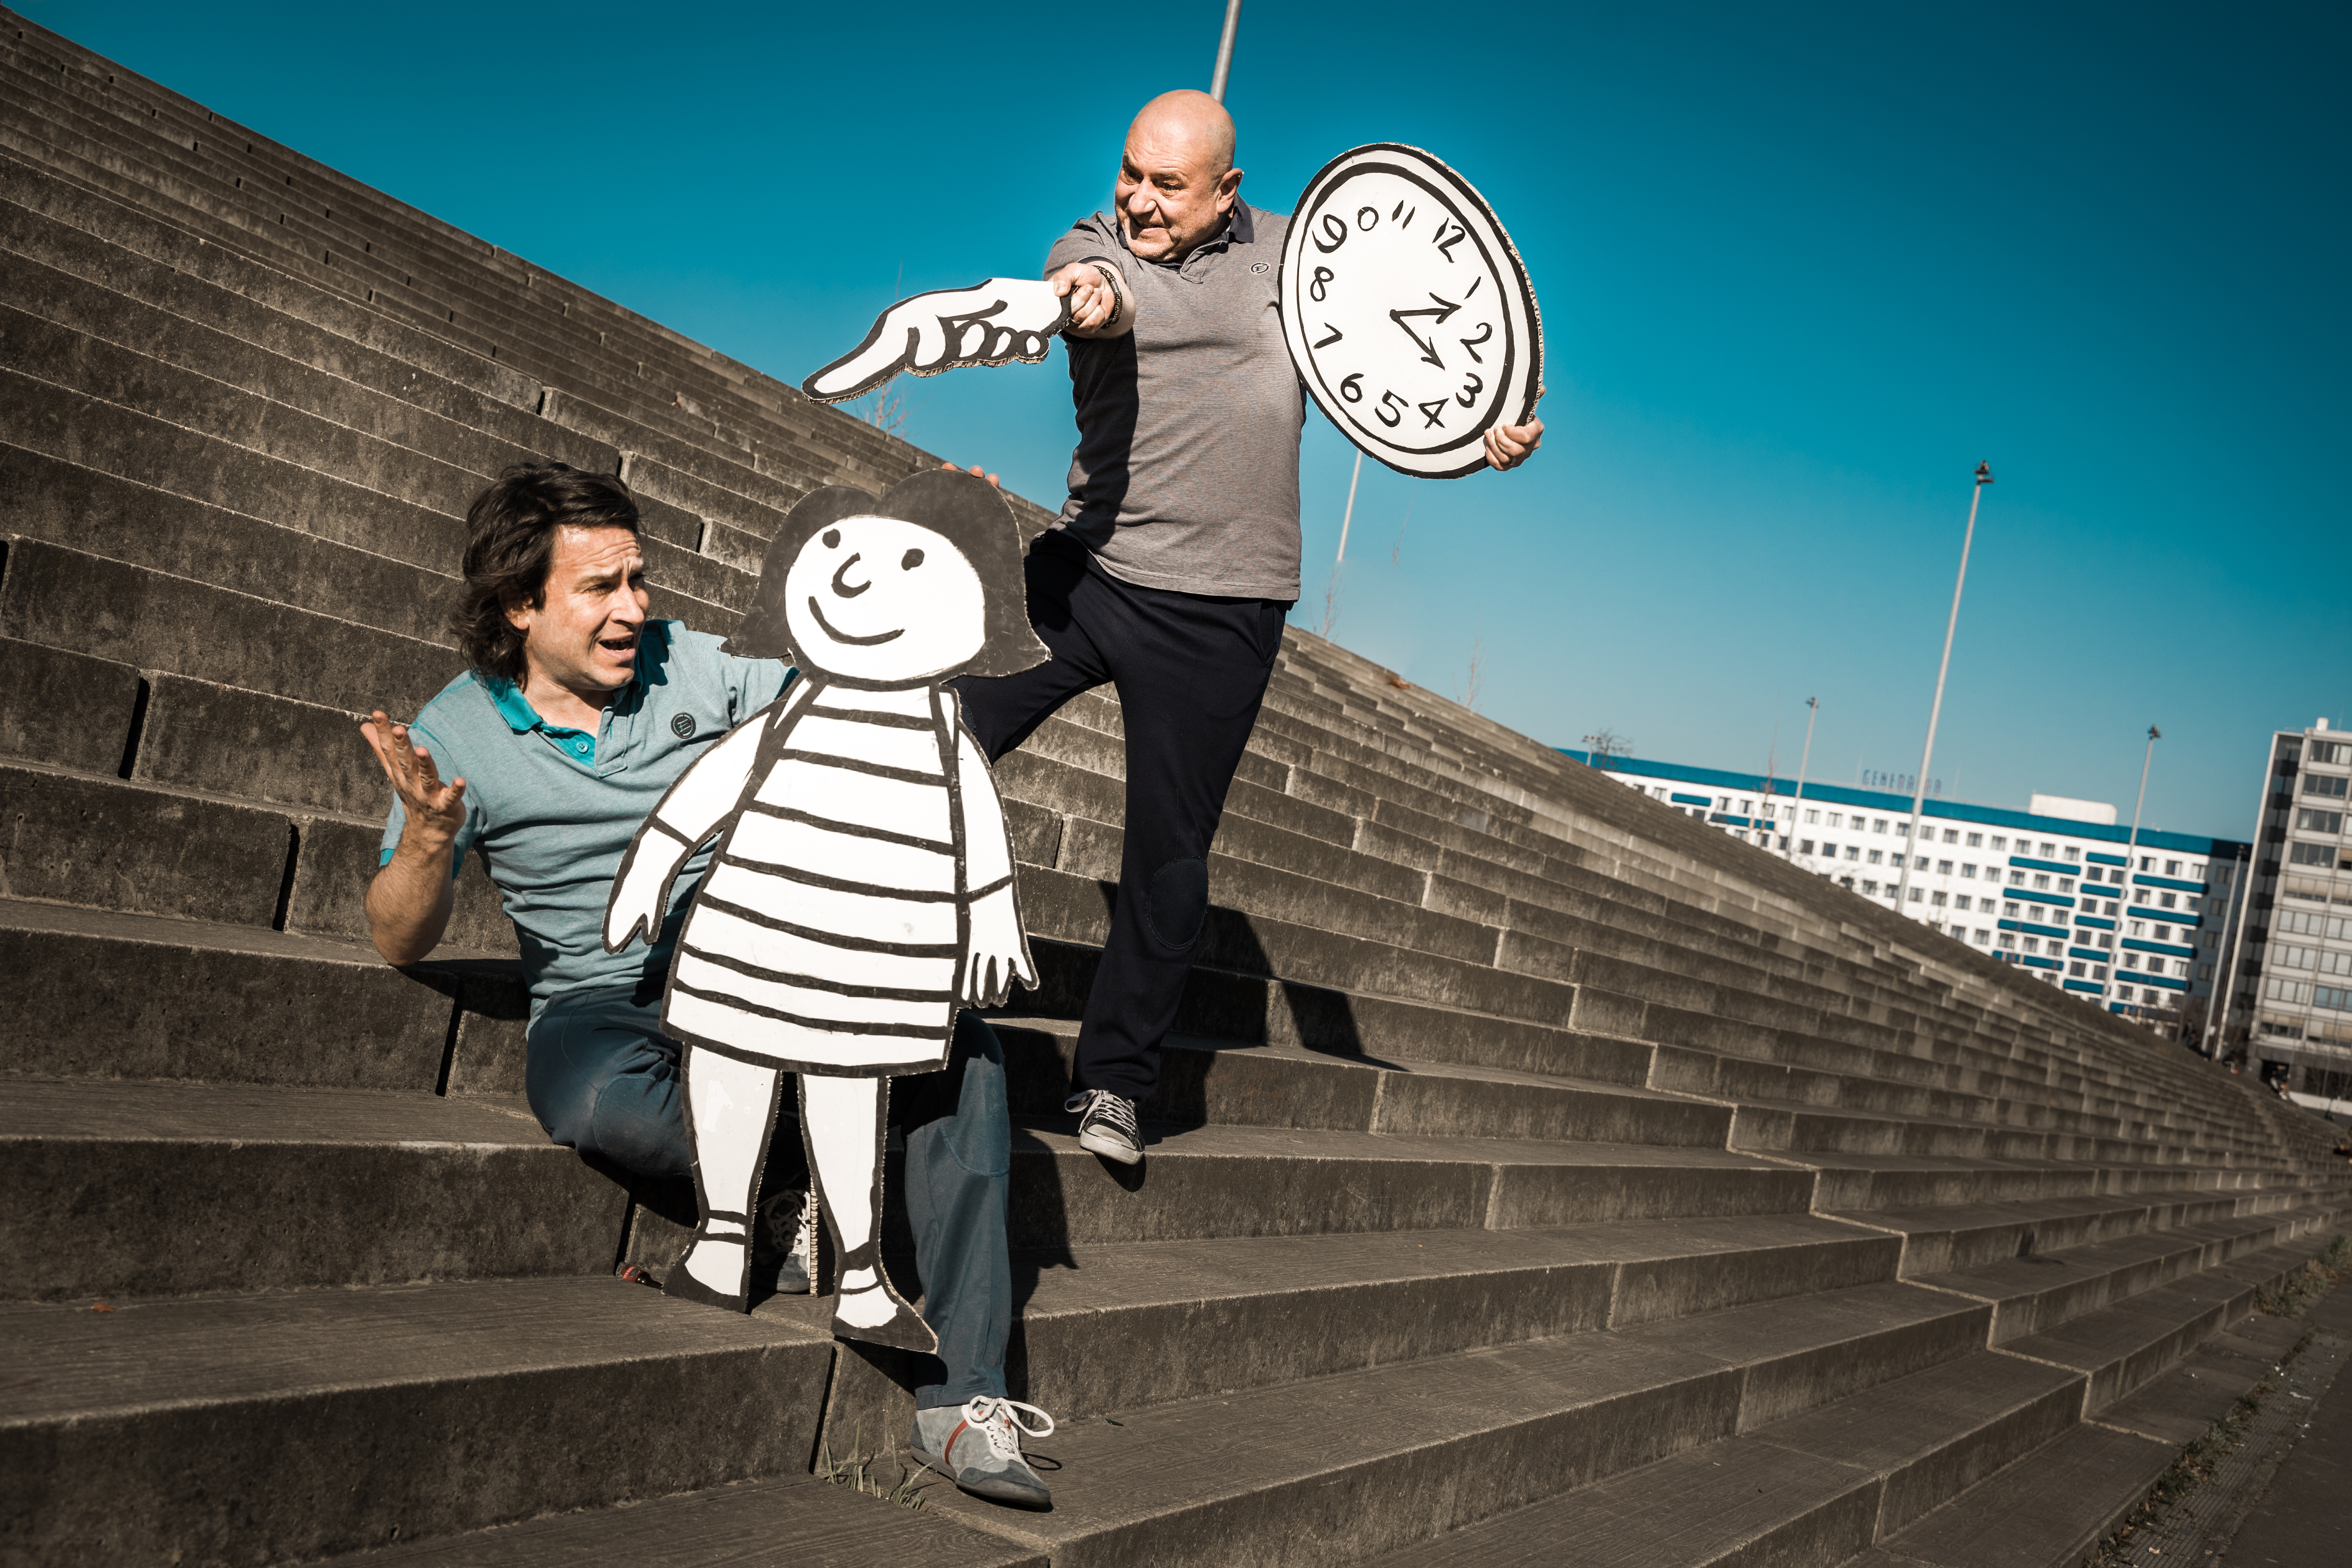 Zwei Spieler mit einer lebensgroßen Flachfigur und einer Uhr aus Papier auf Treppen posierend.